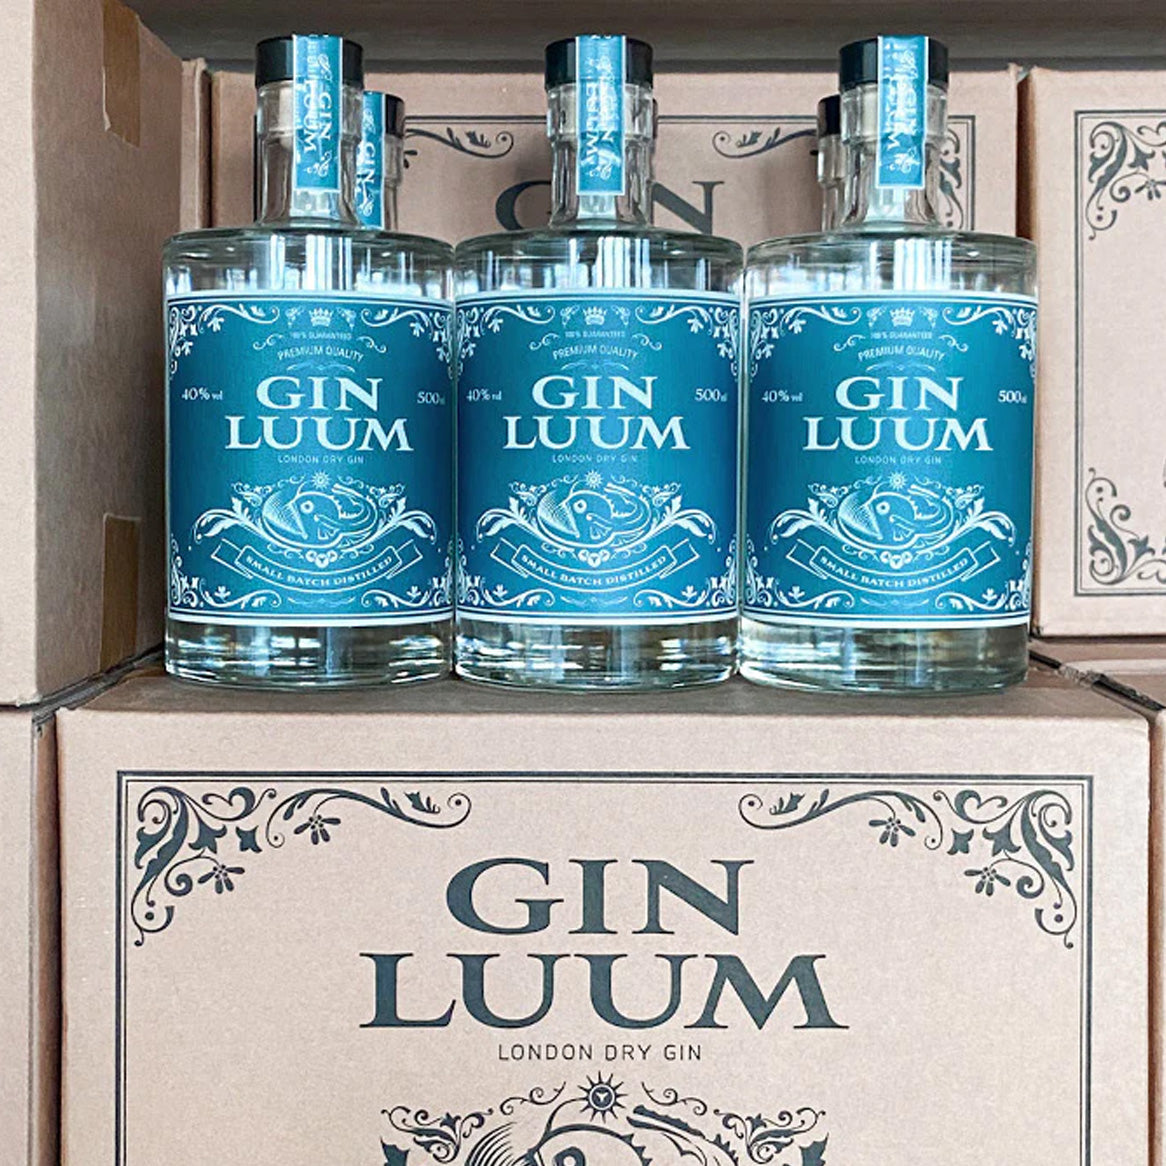 GIN LUUM – 500ml, 40% vol. in a box of 6